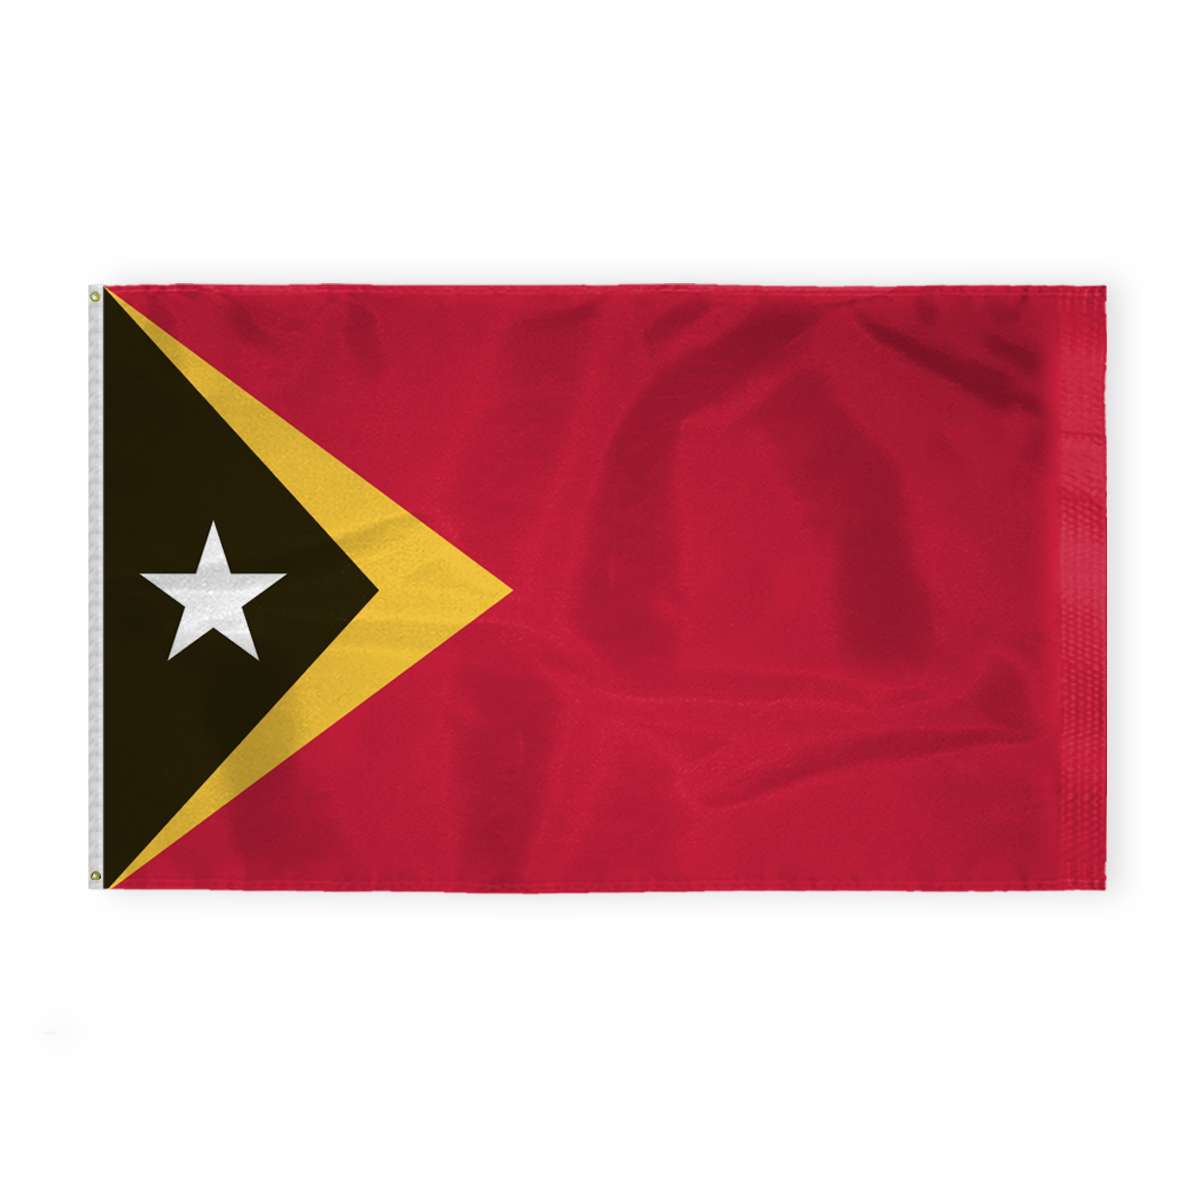 AGAS East Timor Flag 6x10 ft 200D Nylon